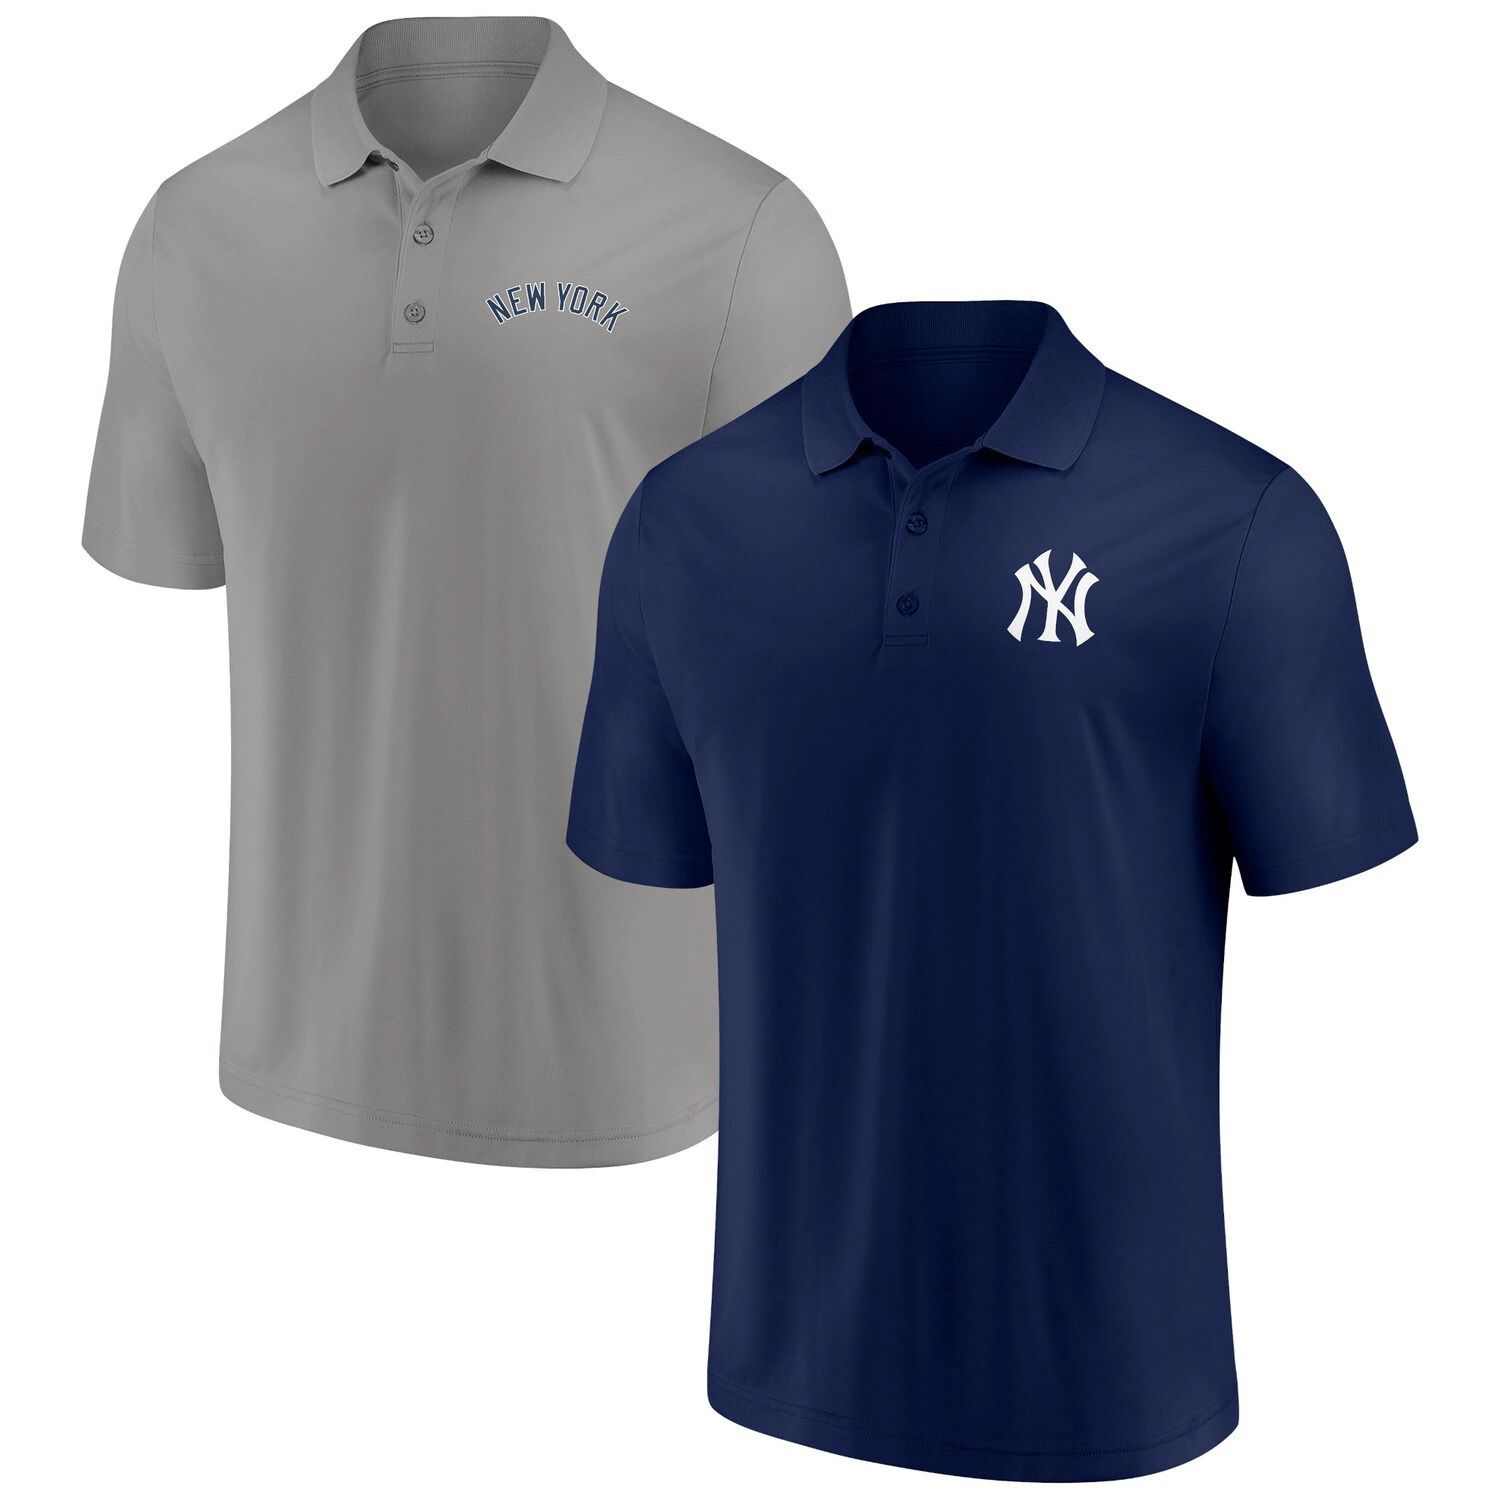 Мужской комплект поло с фирменным логотипом темно-синего/серого цвета New York Yankees Dueling Logos Fanatics